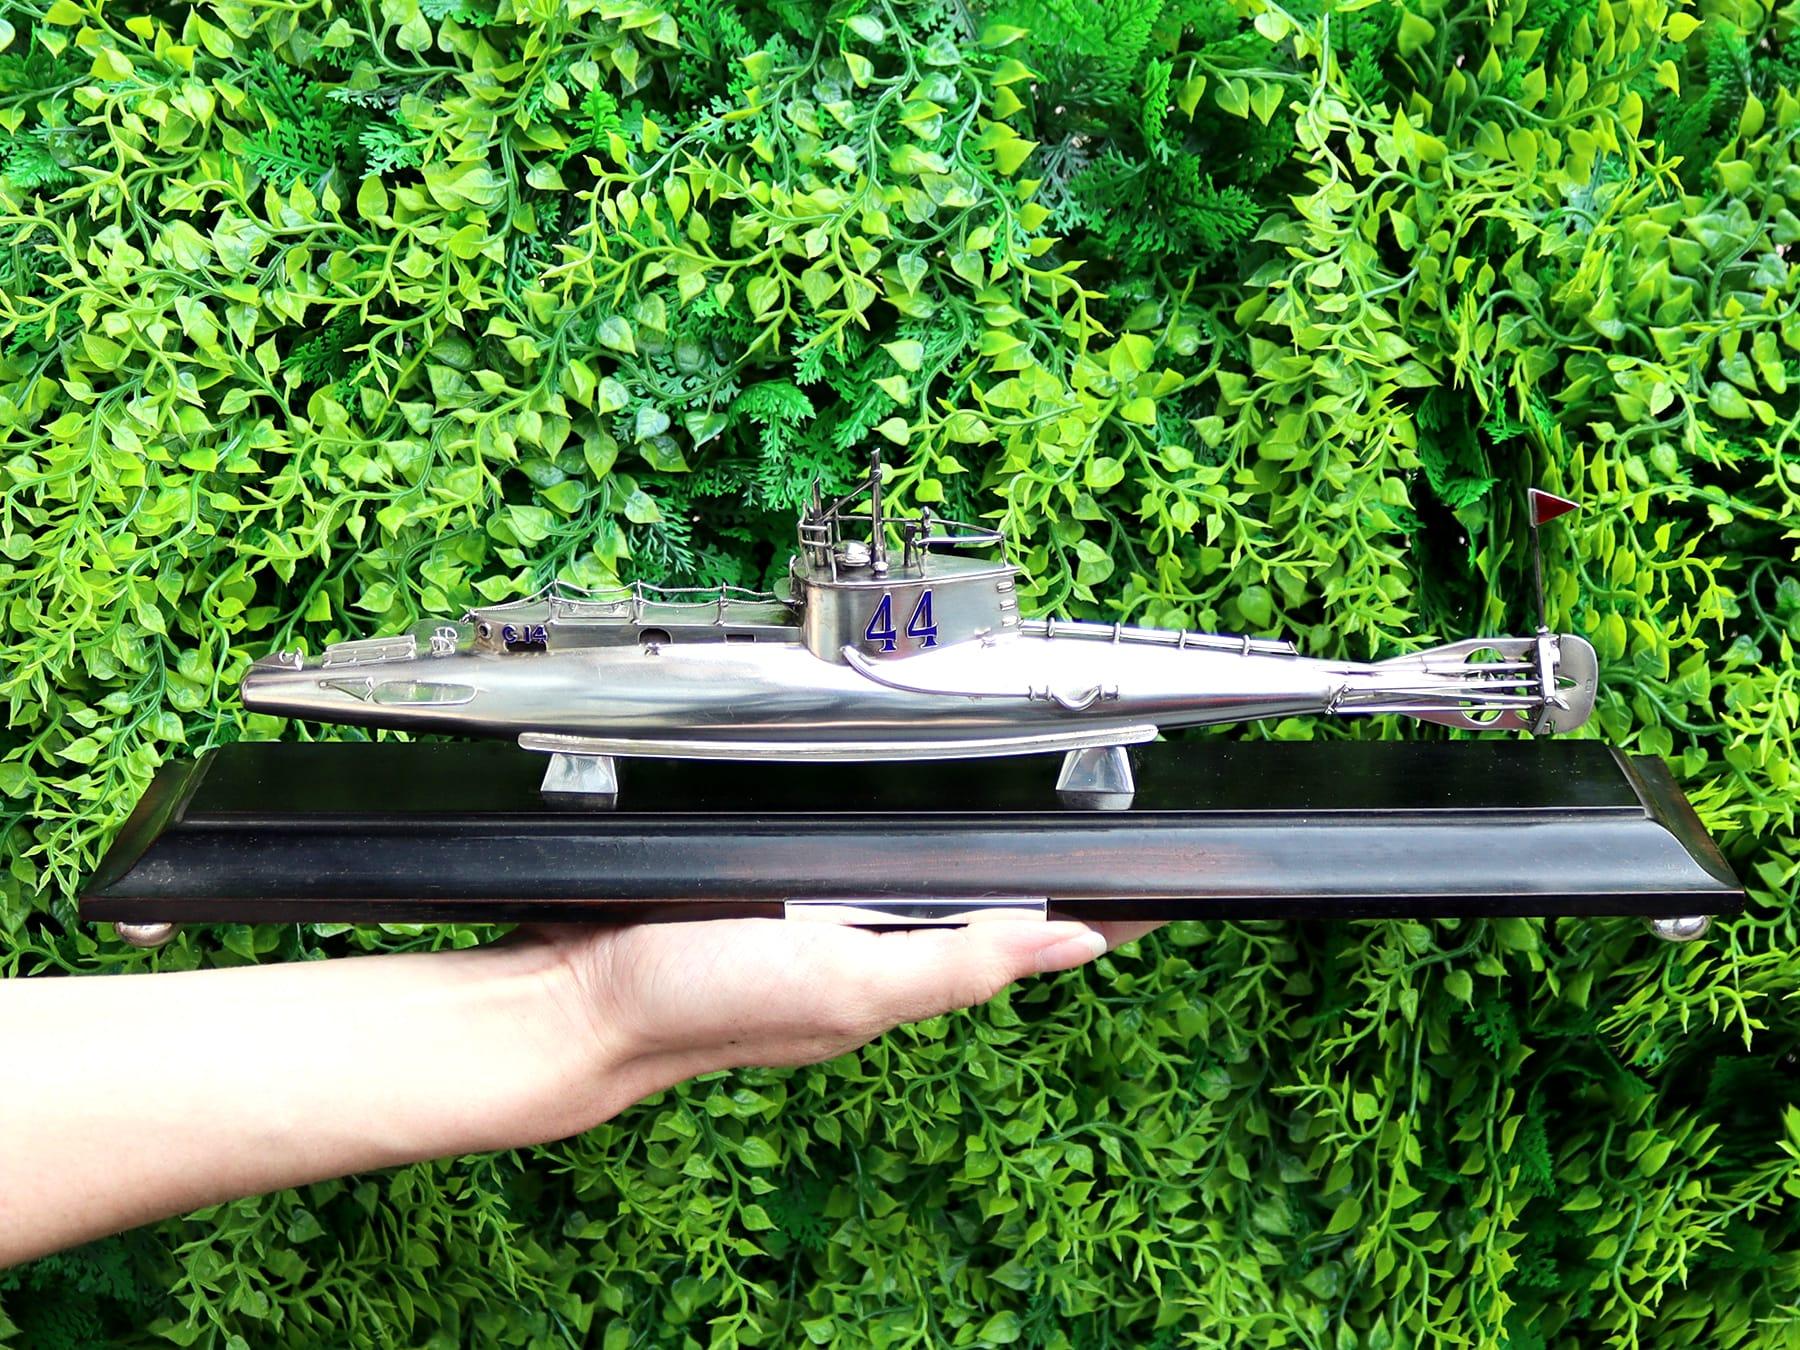 Eine außergewöhnliche, feine und beeindruckende ungewöhnliche antike Sterling-Silber-Präsentation U-Boot auf Sockel; eine Ergänzung zu unserer Transport-bezogenen Silberwaren Sammlung

Dieses außergewöhnliche und ungewöhnliche antike